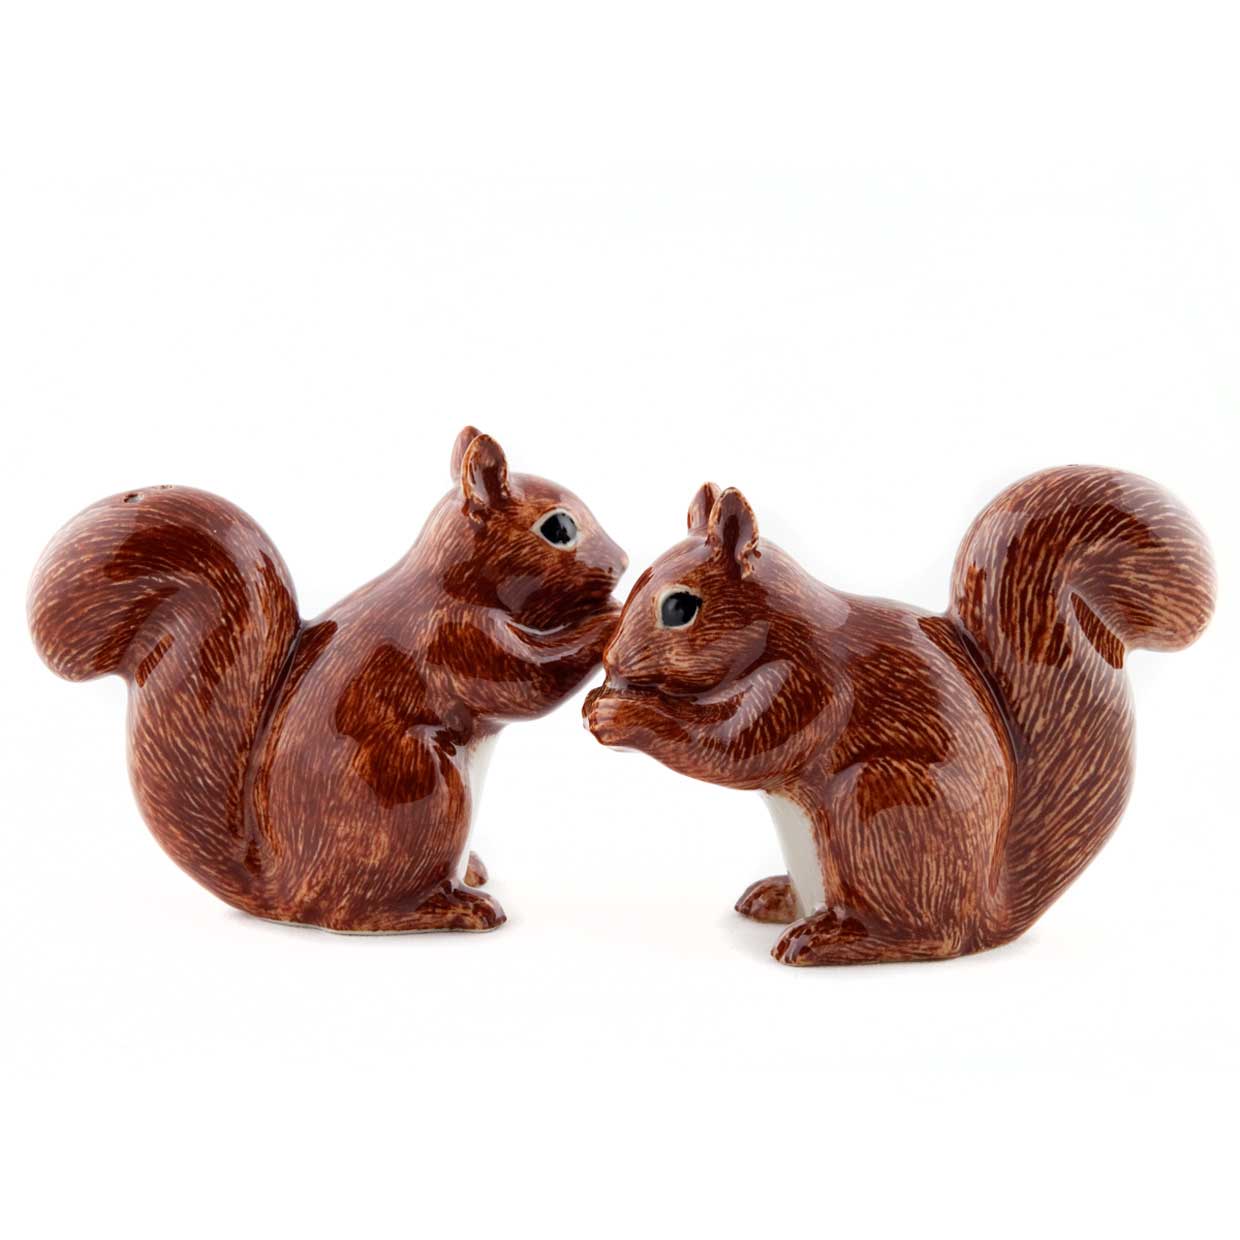 Eichhörnchen / Squirrel - die Salz und Pfeffer Streuer von Quail Ceramics